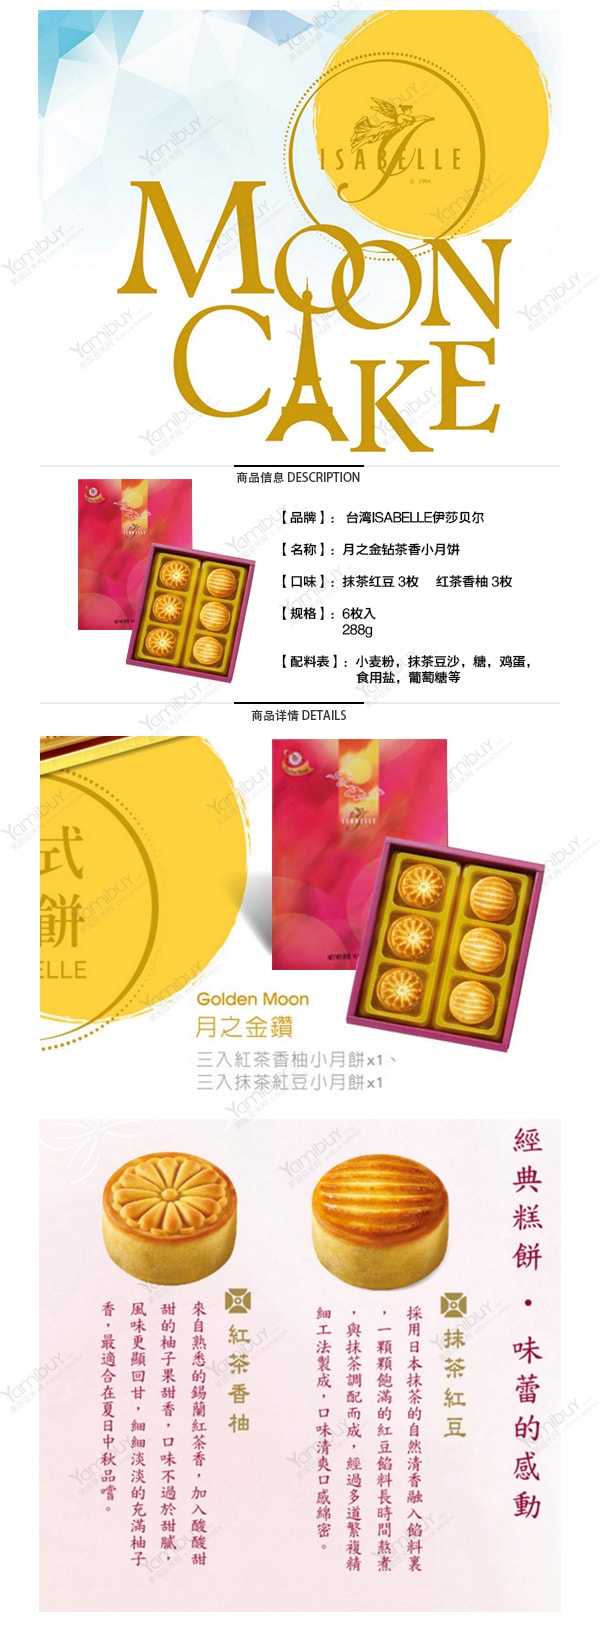 【全美最低价】台湾ISABELLE伊莎贝尔 月之金钻 茶香小月饼 礼盒装 6枚入 【发货时间：8月底】